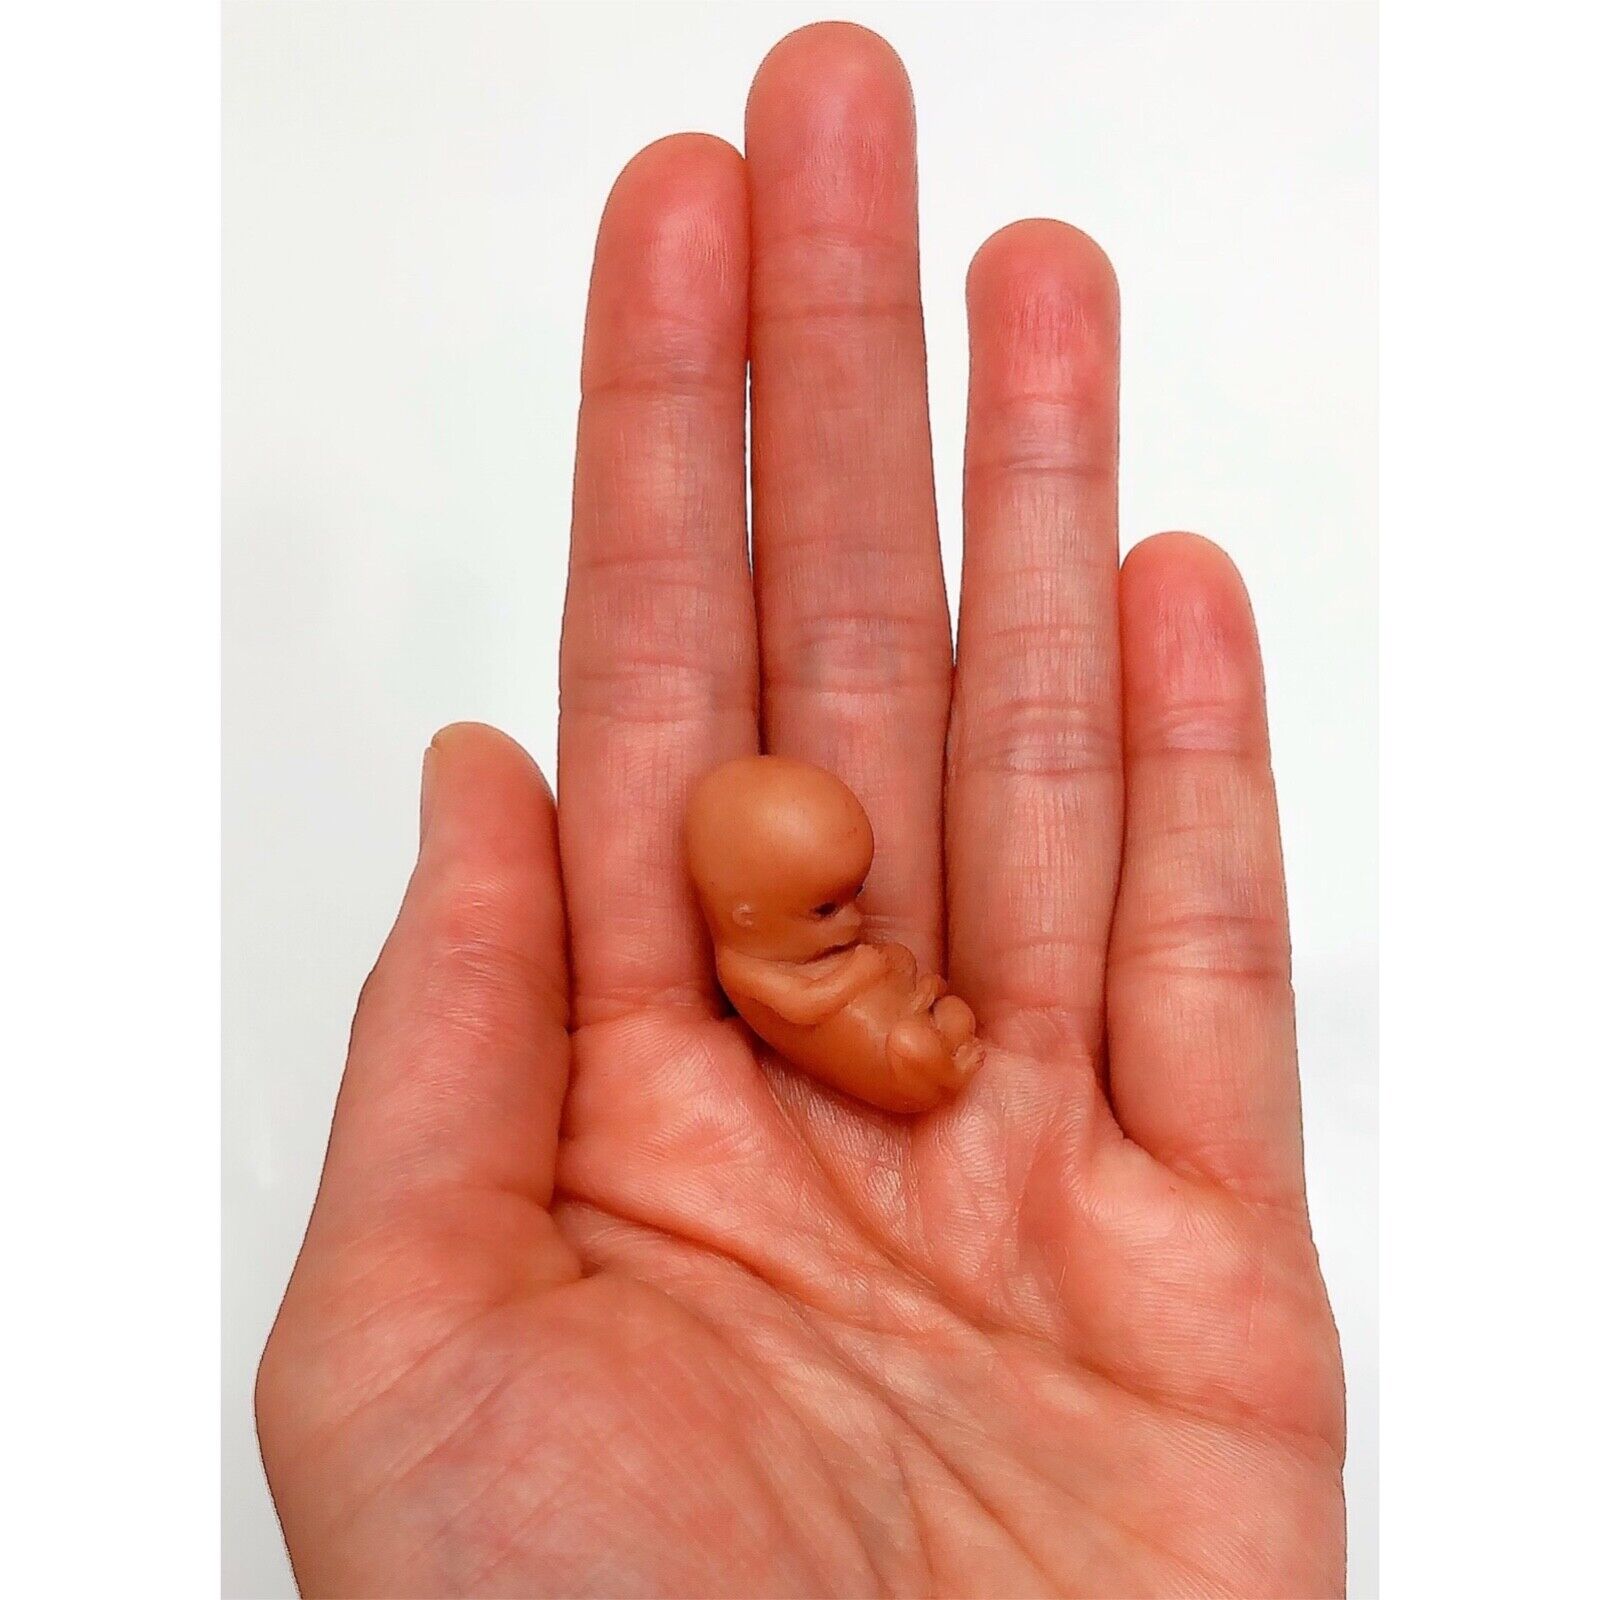 10 Weeks Baby Fetus, Stage of Fetal Development (Memorial/Miscarriage/Keepsake)